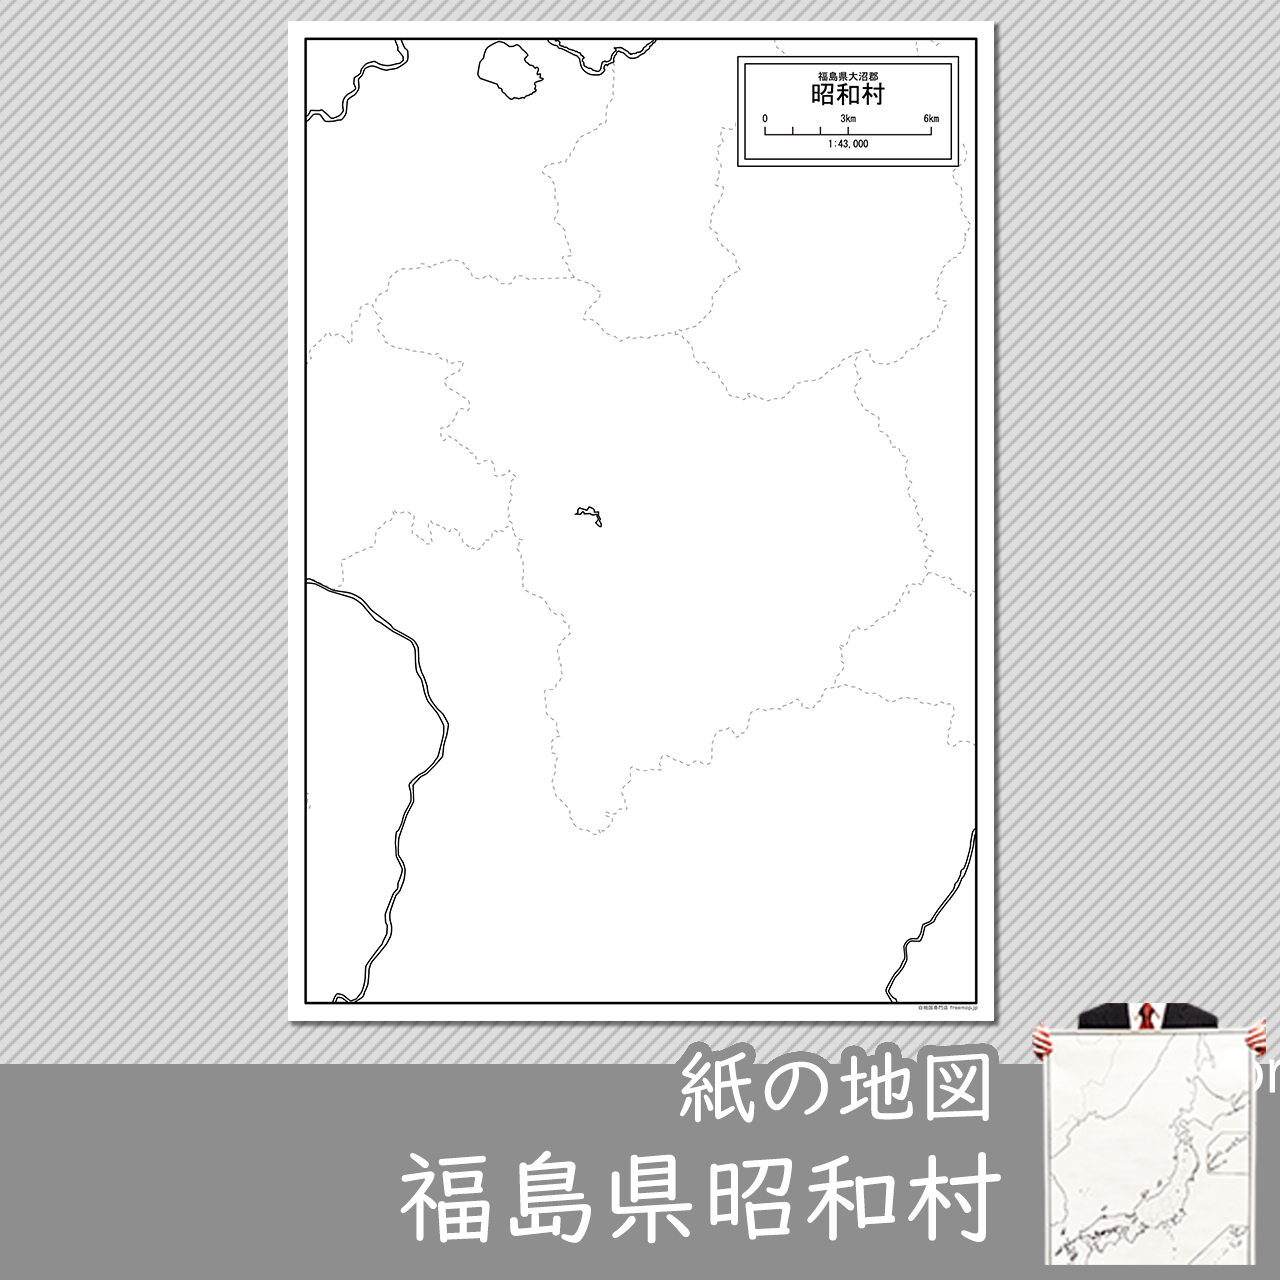 昭和村の紙の白地図のサムネイル